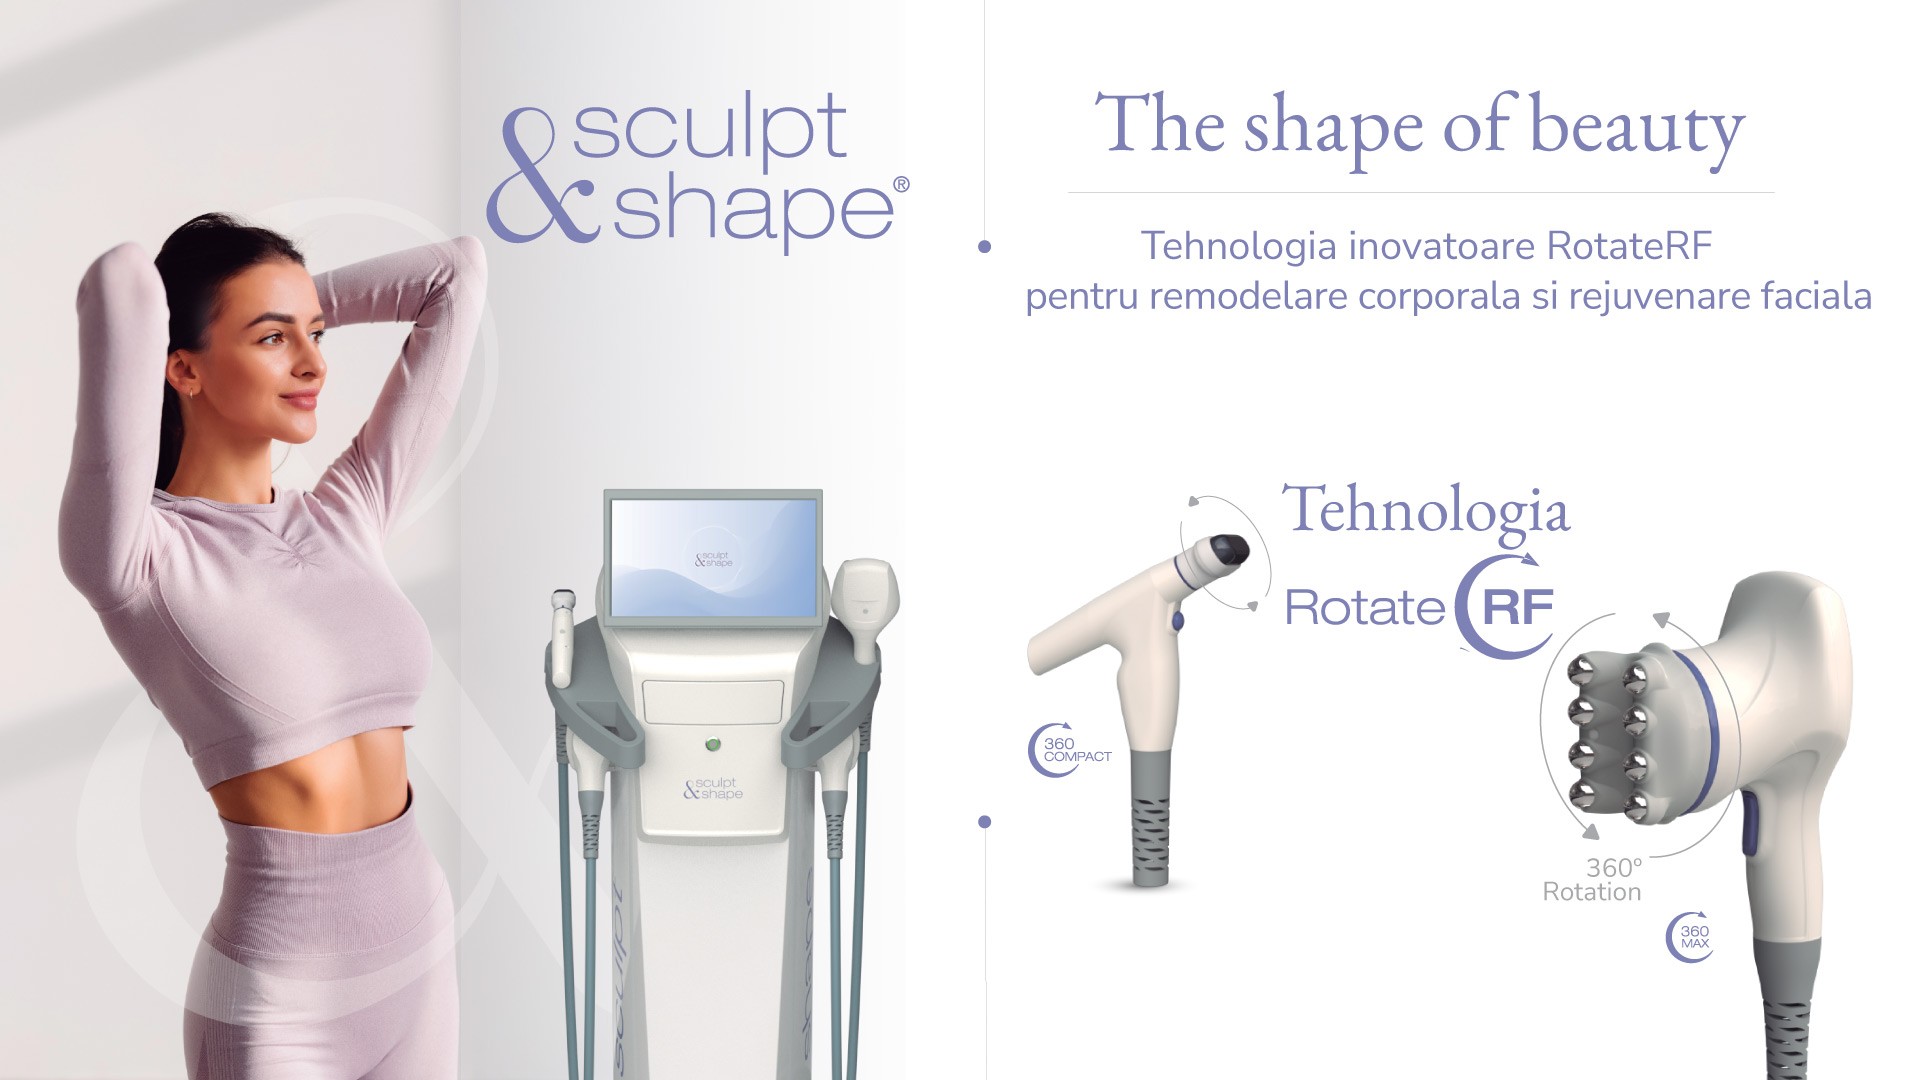 Sculpt and Shape - Aparat cu Tehnologie Inovatoare Rotate RF pentru Remodelare Corporala si Rejuvenare Faciala